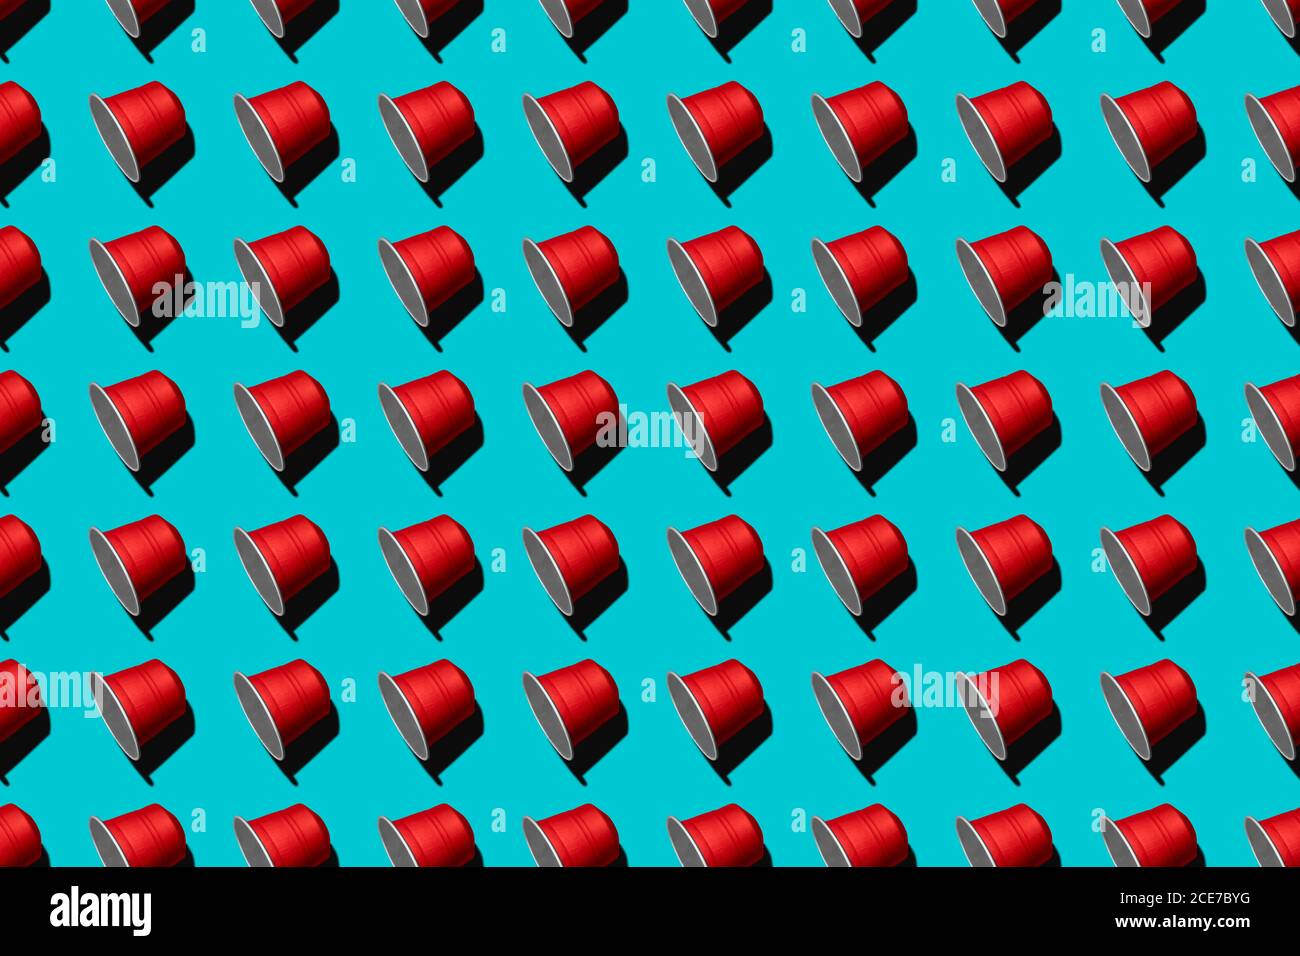 Draufsicht auf rote Kaffeepads in geraden Reihen Als nahtloses Muster auf blauem Hintergrund Stockfoto